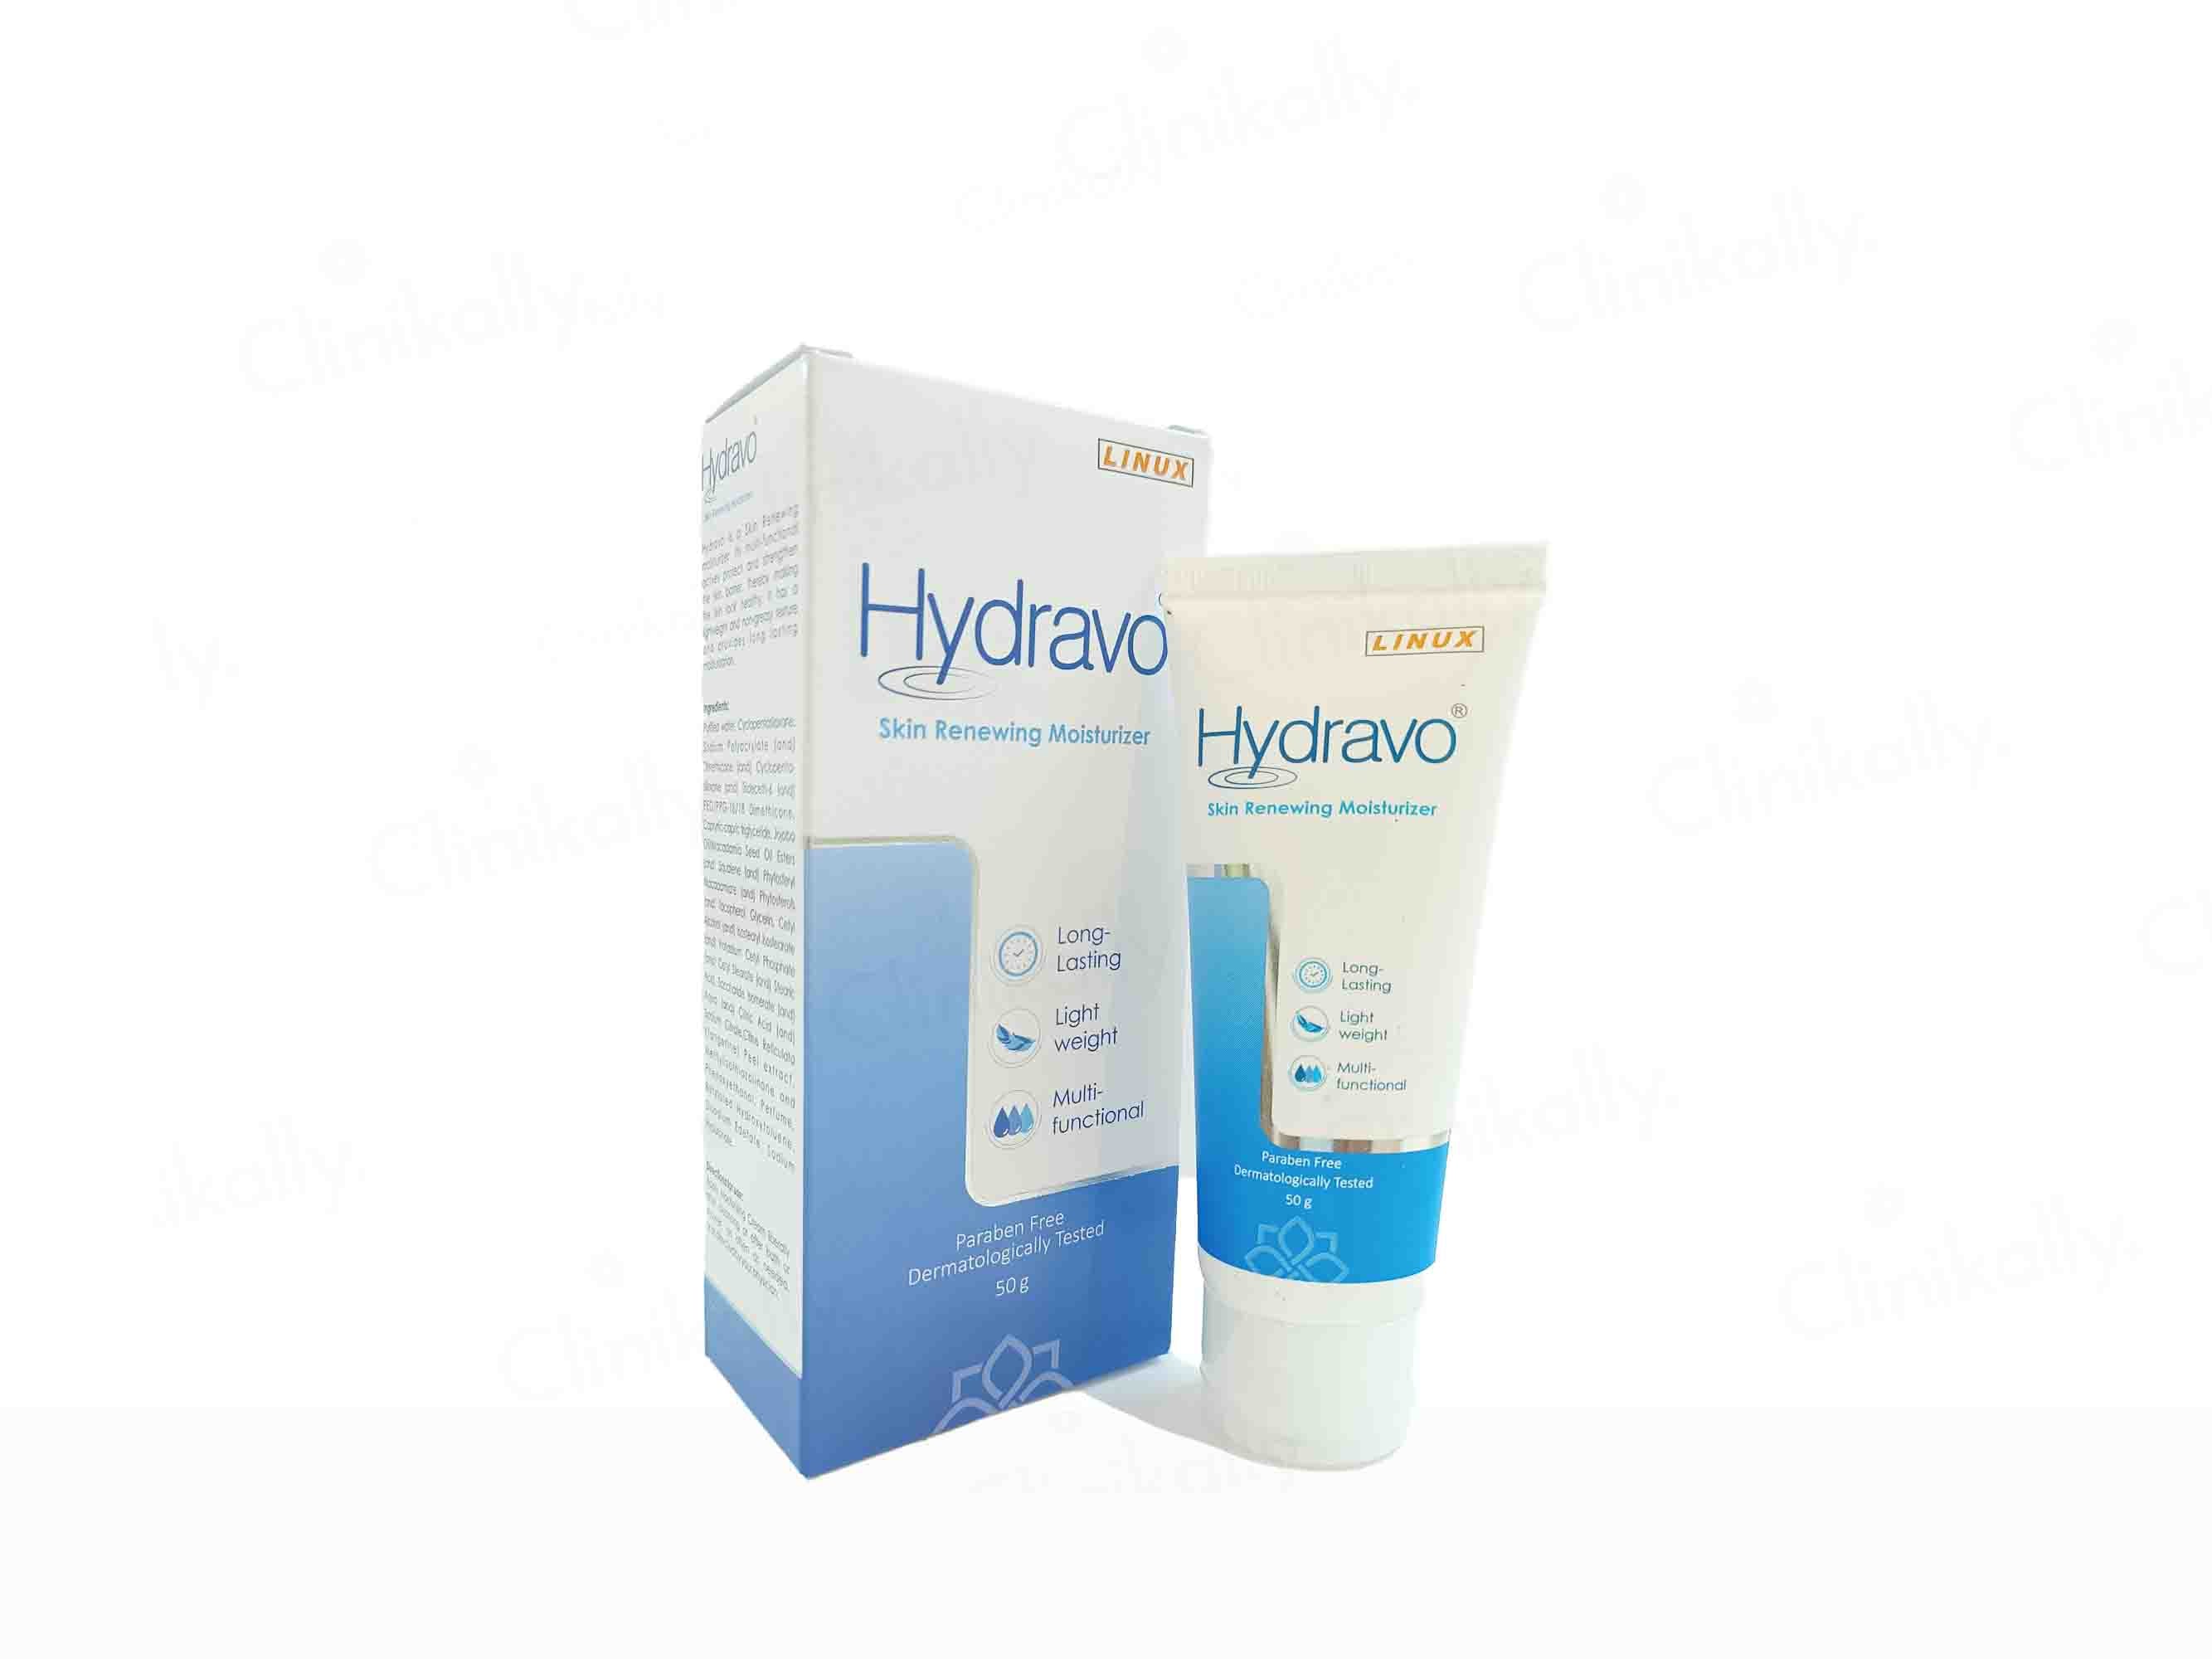 Hydravo Skin Renewing Moisturizer - Clinikally